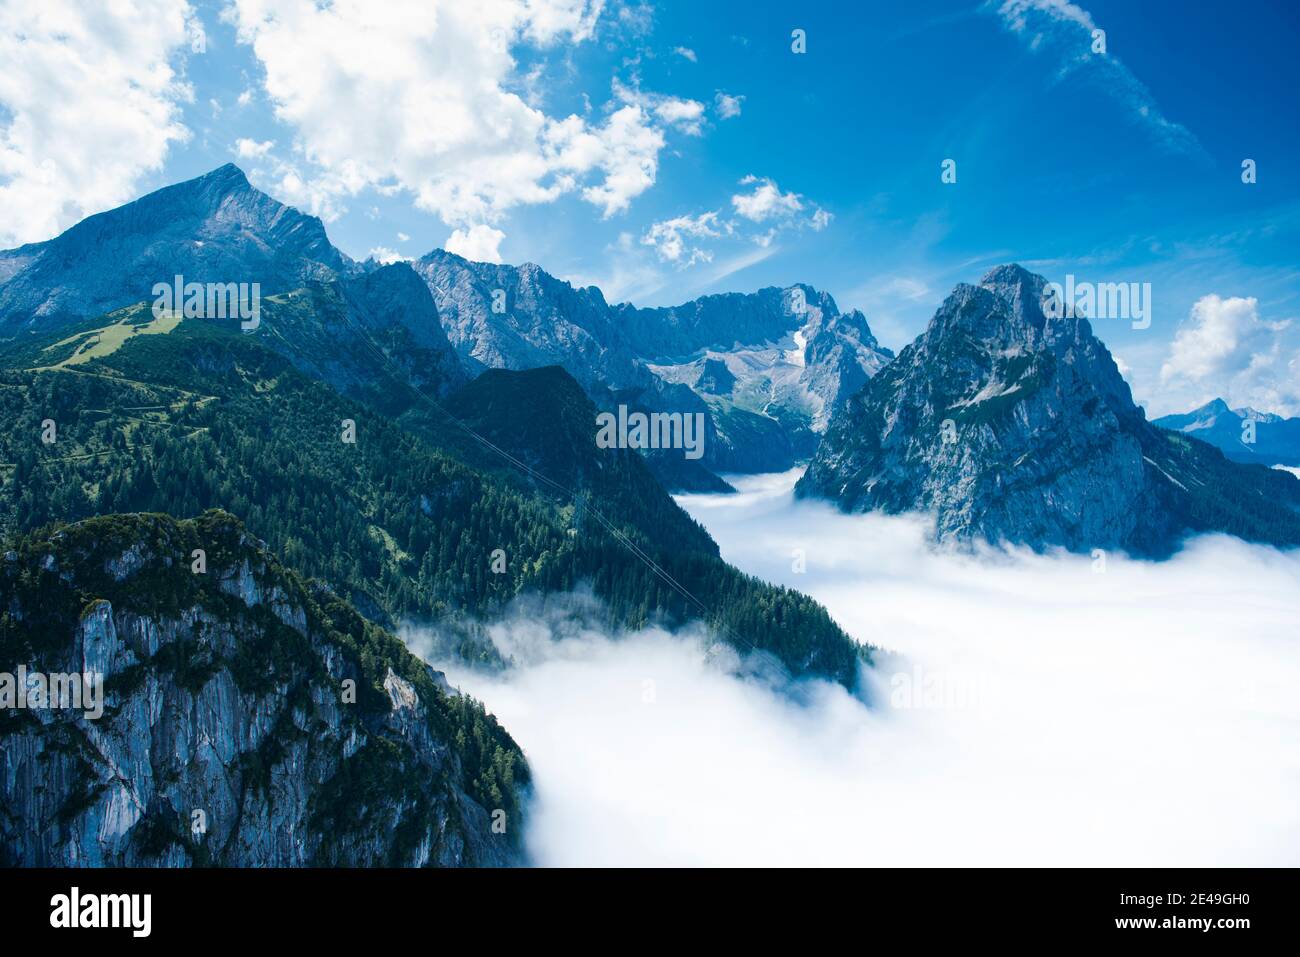 Alpspitze, Zugspitze, Waxenstein, Höllental, brouillard, montagnes Wetterstein, Garmisch-Partenkirchen, vue aérienne, Werdenfelser Land, Oberland, Bavière, Allemagne Banque D'Images